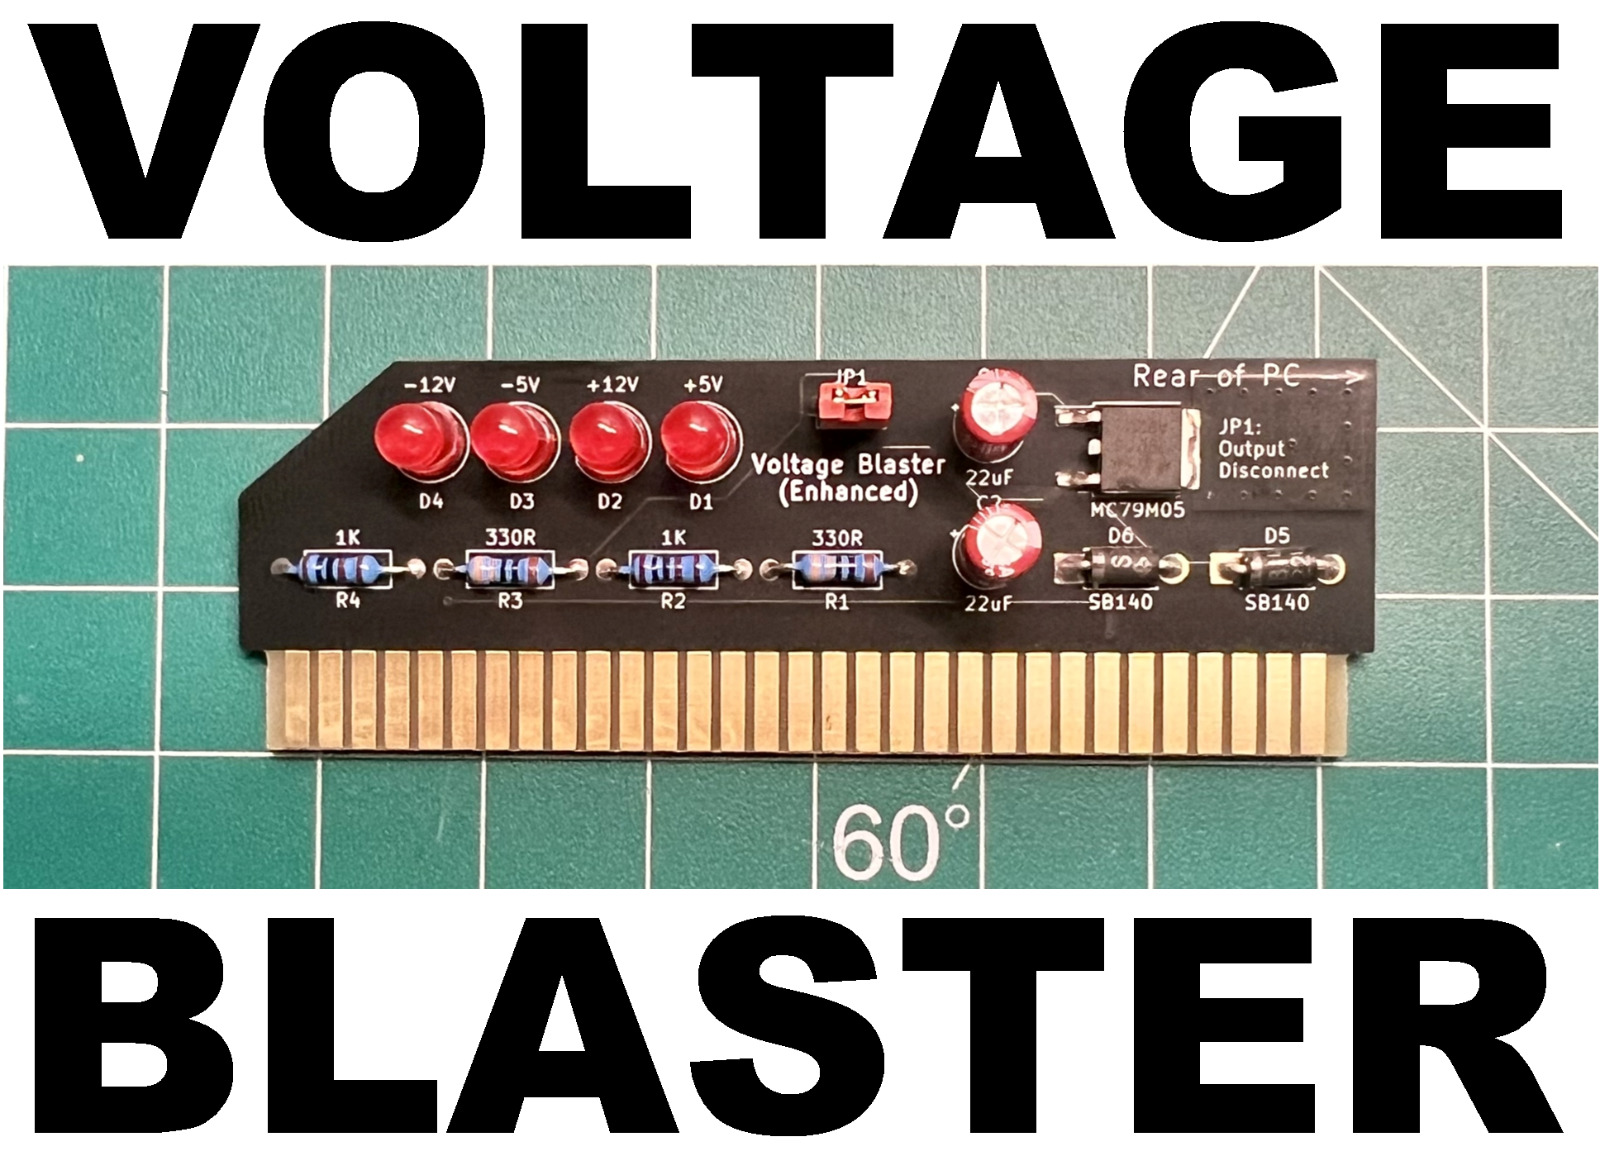 Voltage Blaster (Enhanced) -5V ISA AT ATX Power for Vintage Retro PCs US Seller